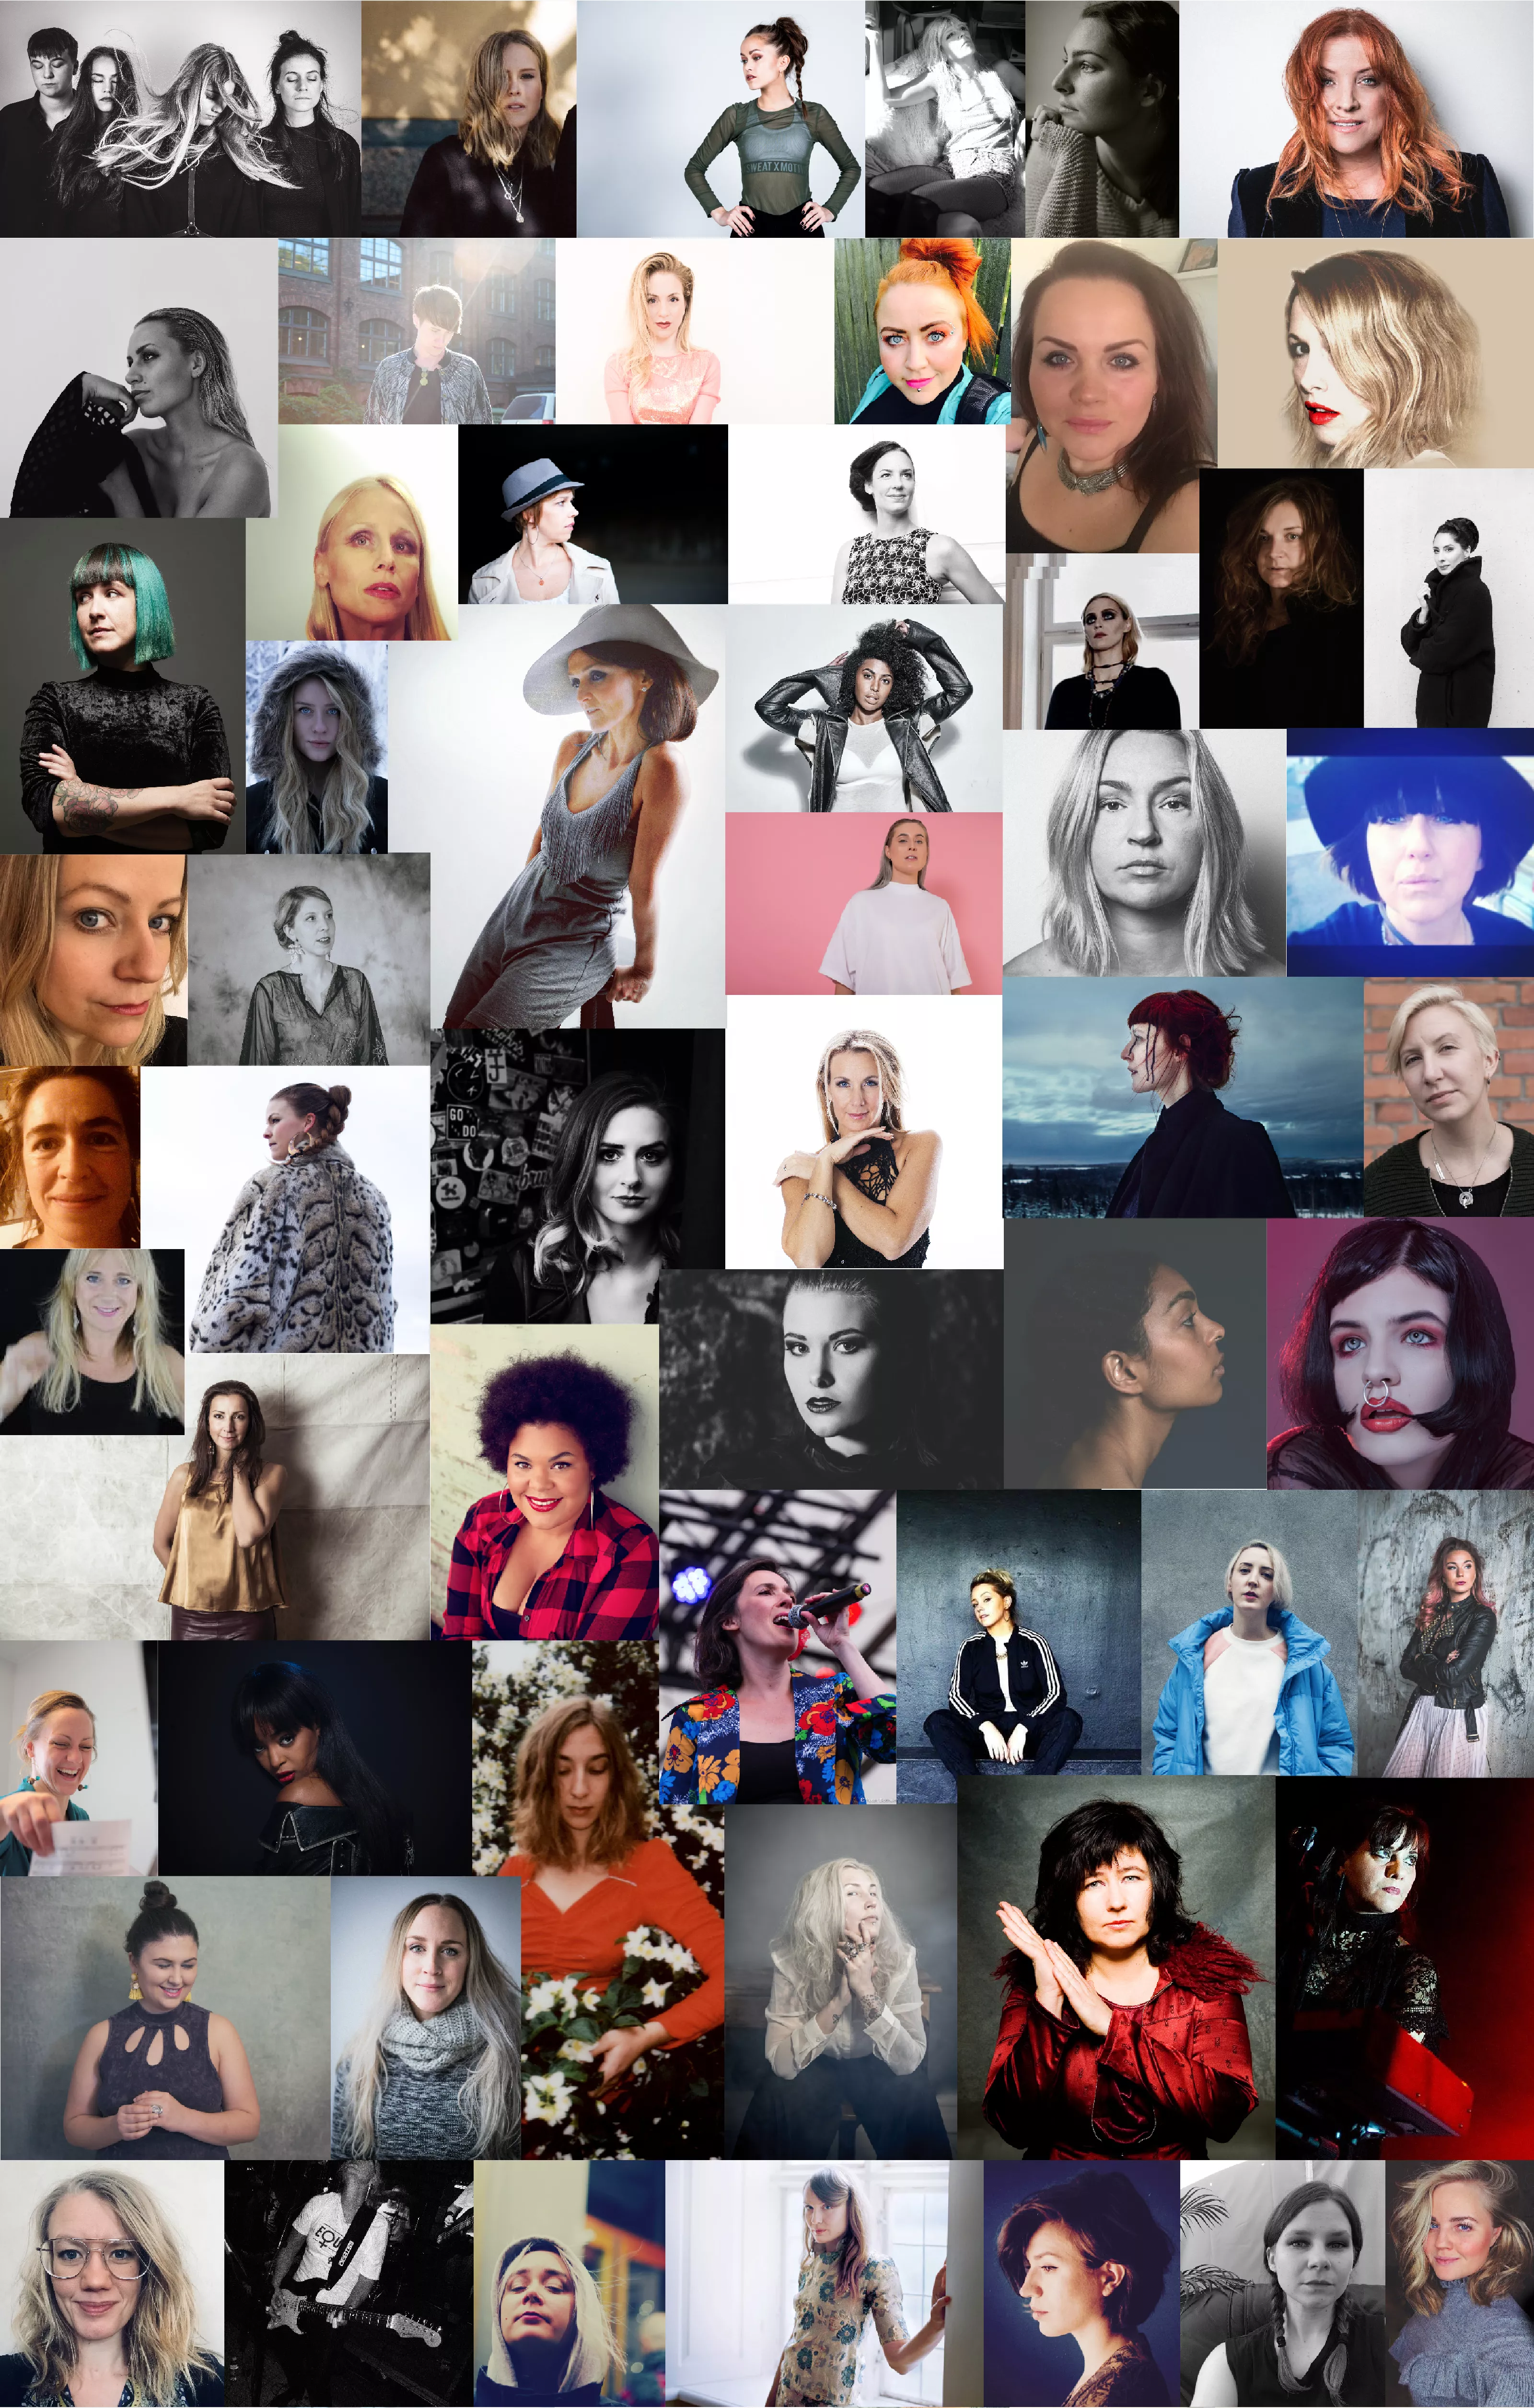 56 svenska artister släpper låt om #metoo